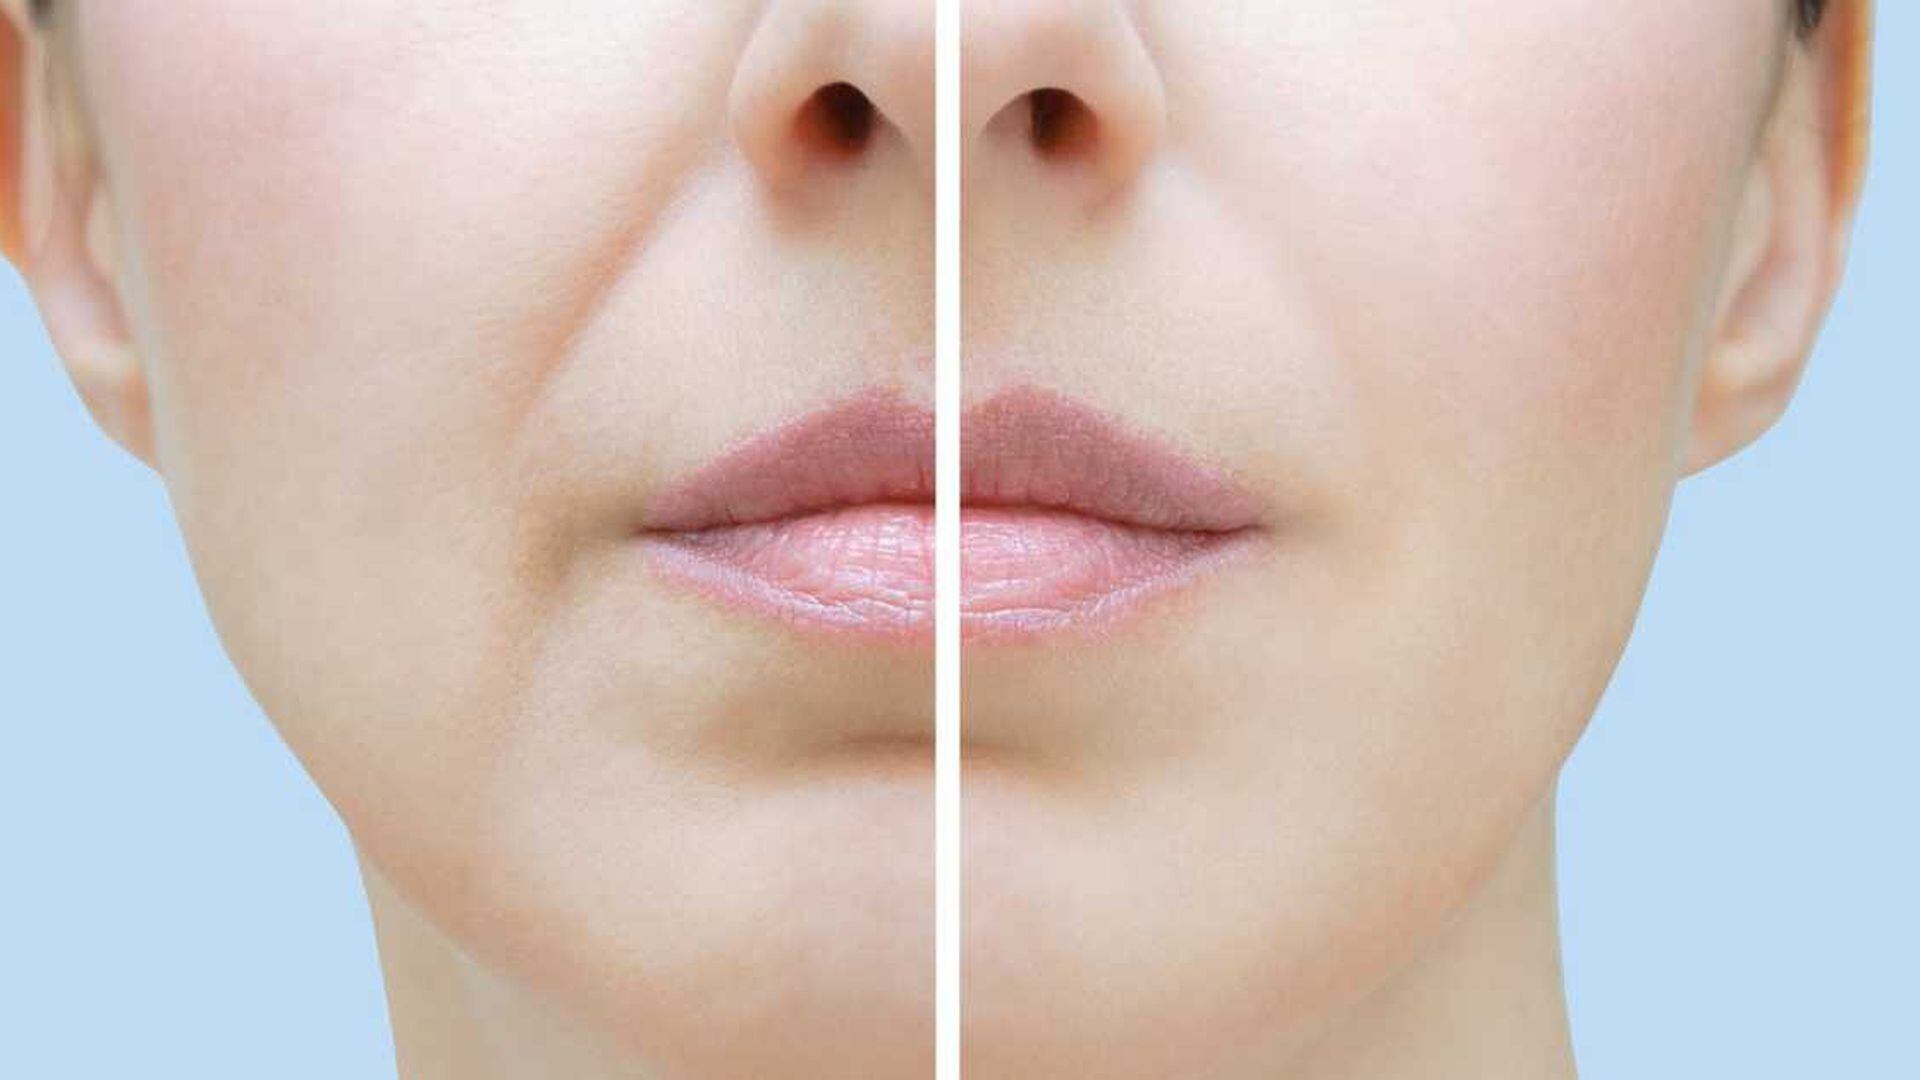 Nervio provocar carencia Cómo eliminar las arrugas alrededor de la boca con remedios caseros?